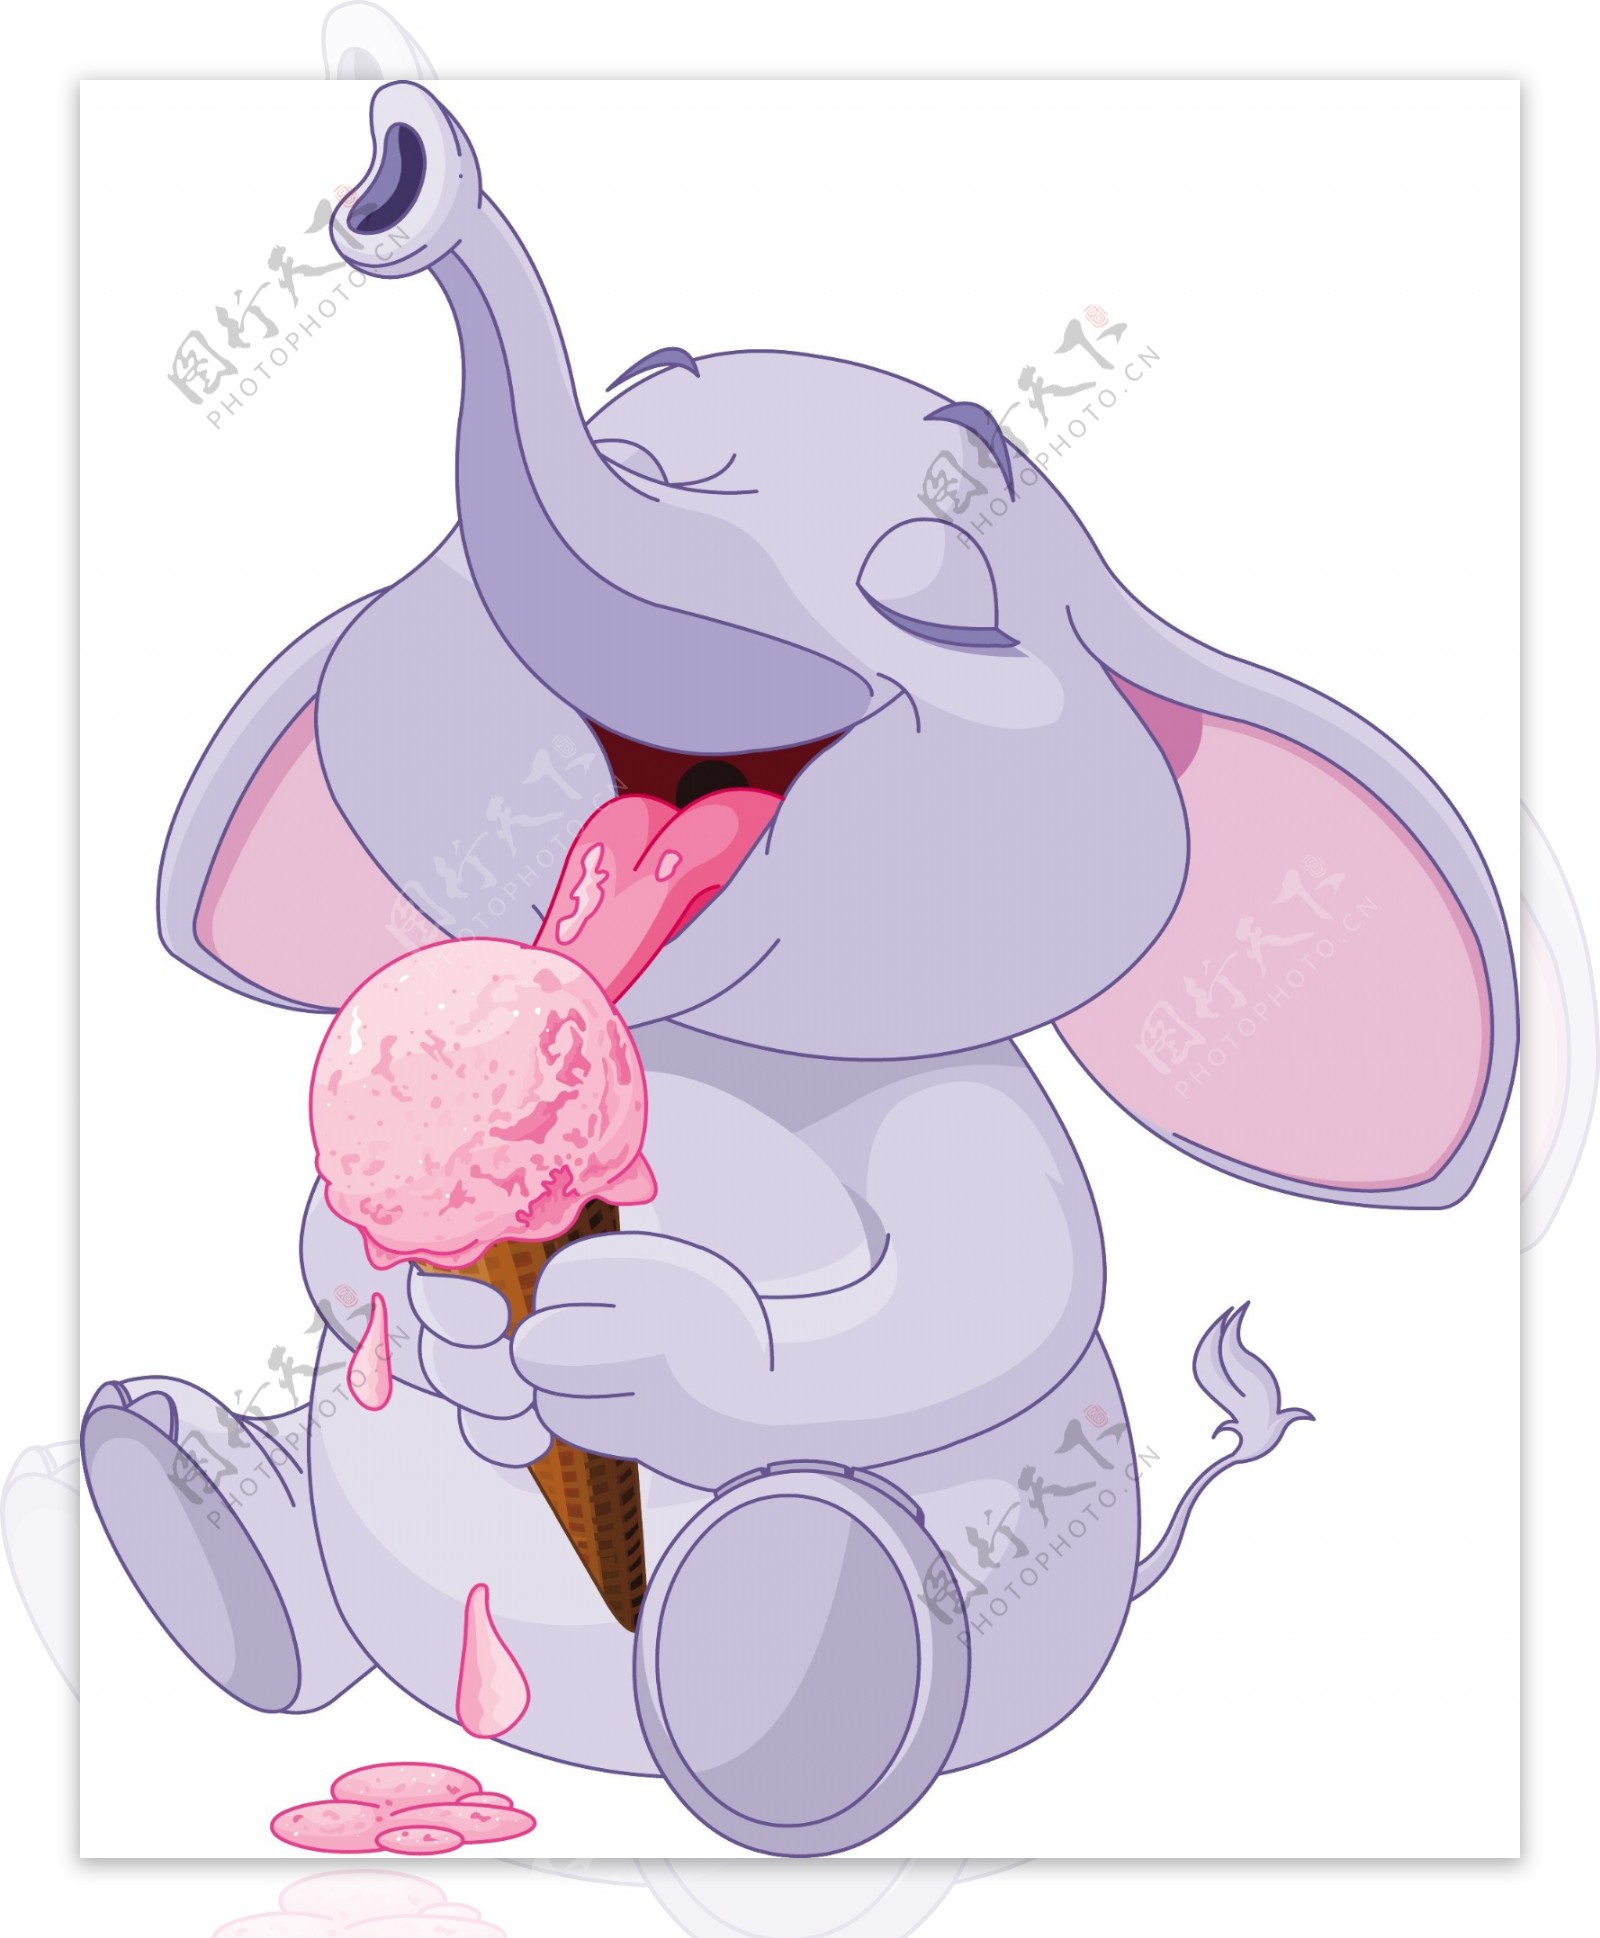 吃冰淇淋的大象